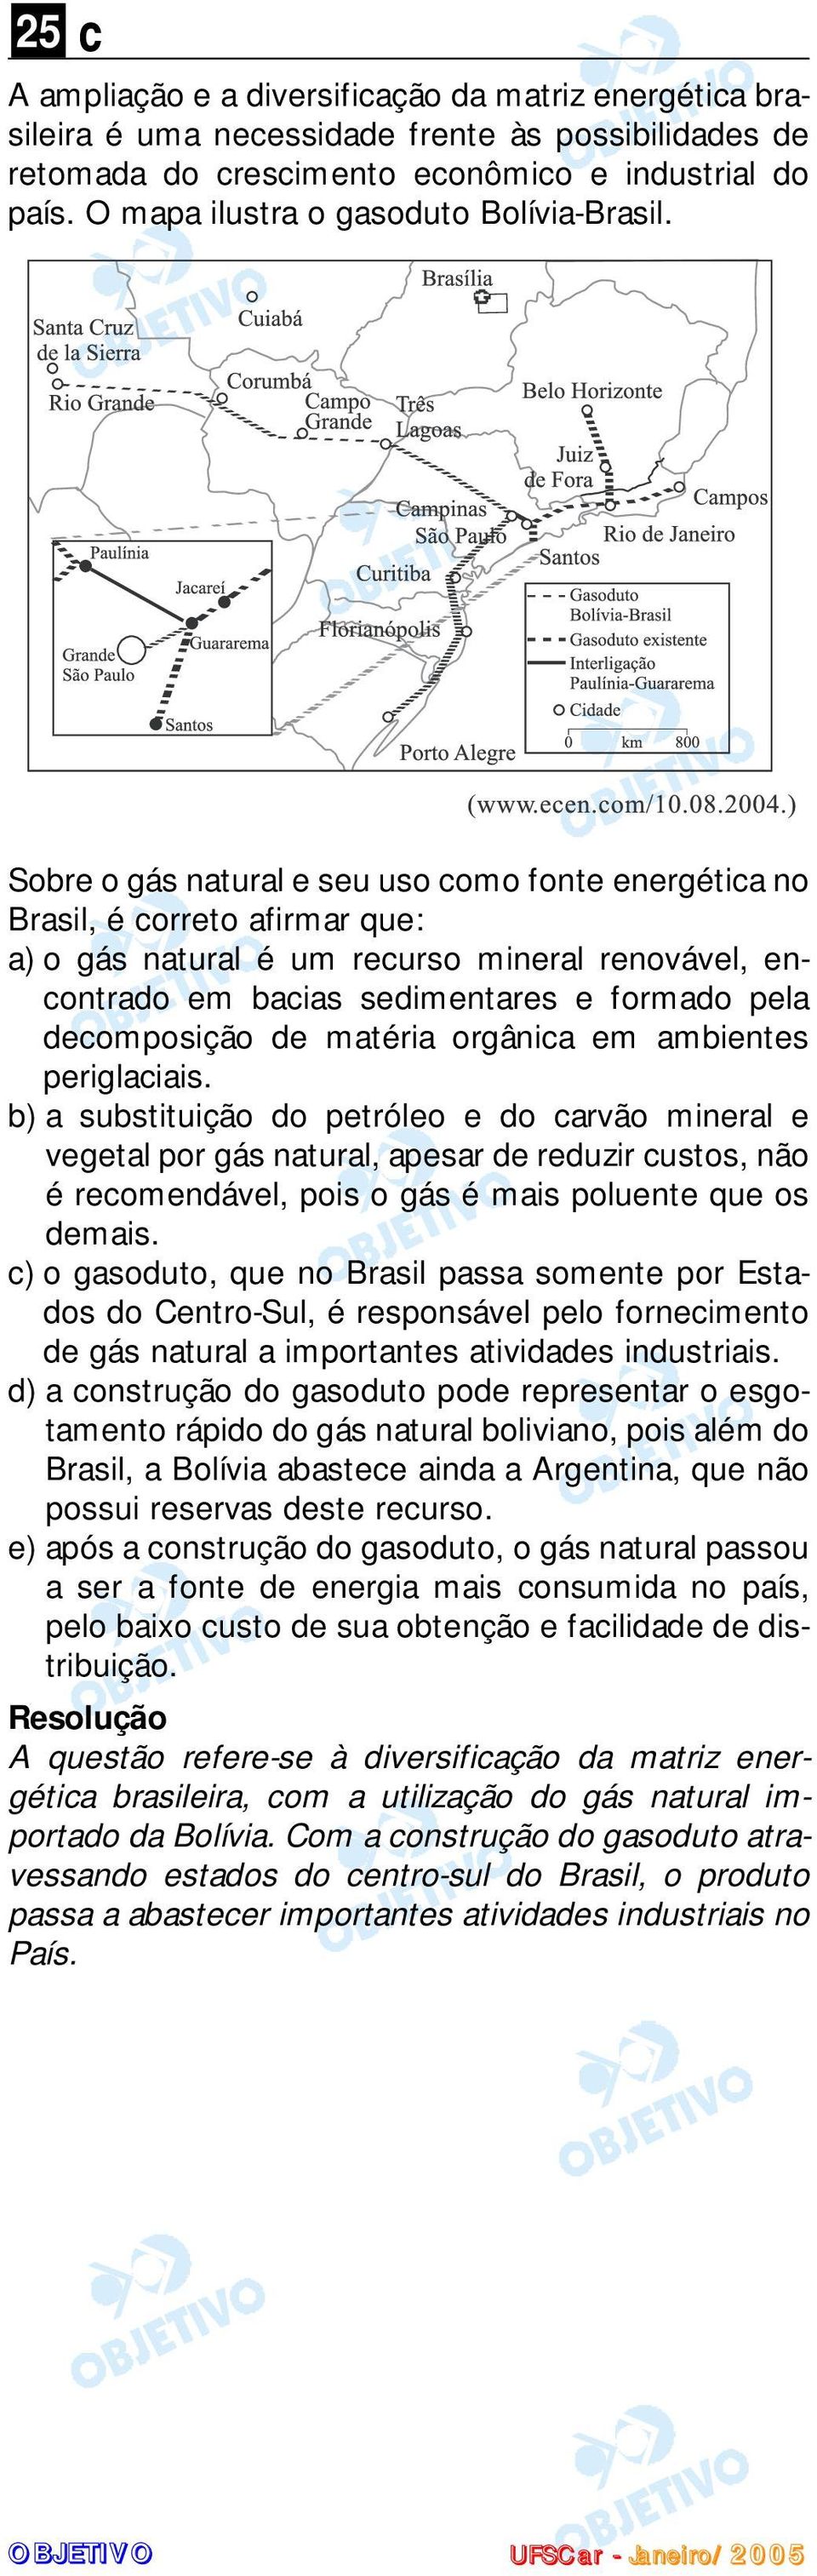 Sobre o gás natural e seu uso como fonte energética no Brasil, é correto afirmar que: a) o gás natural é um recurso mineral renovável, encontrado em bacias sedimentares e formado pela decomposição de